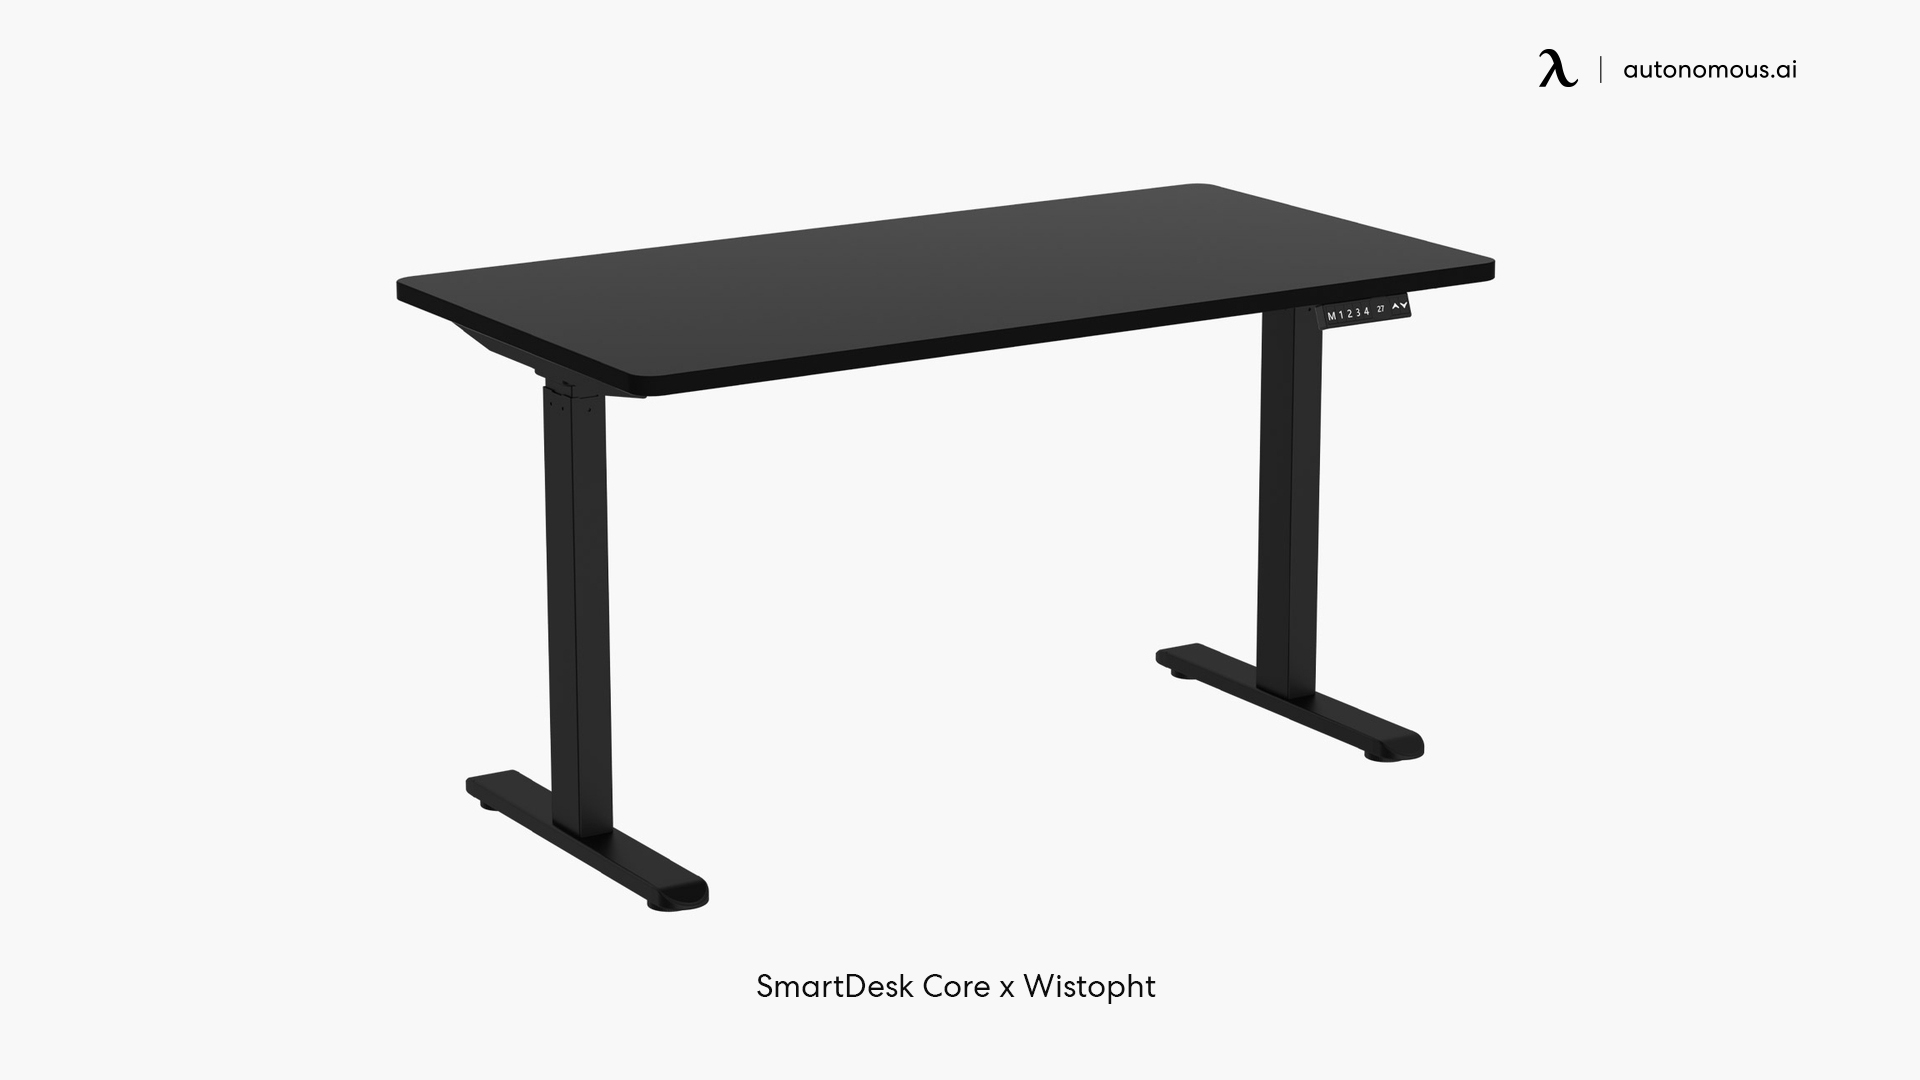 Autonomous Compact Desk by Wistopht